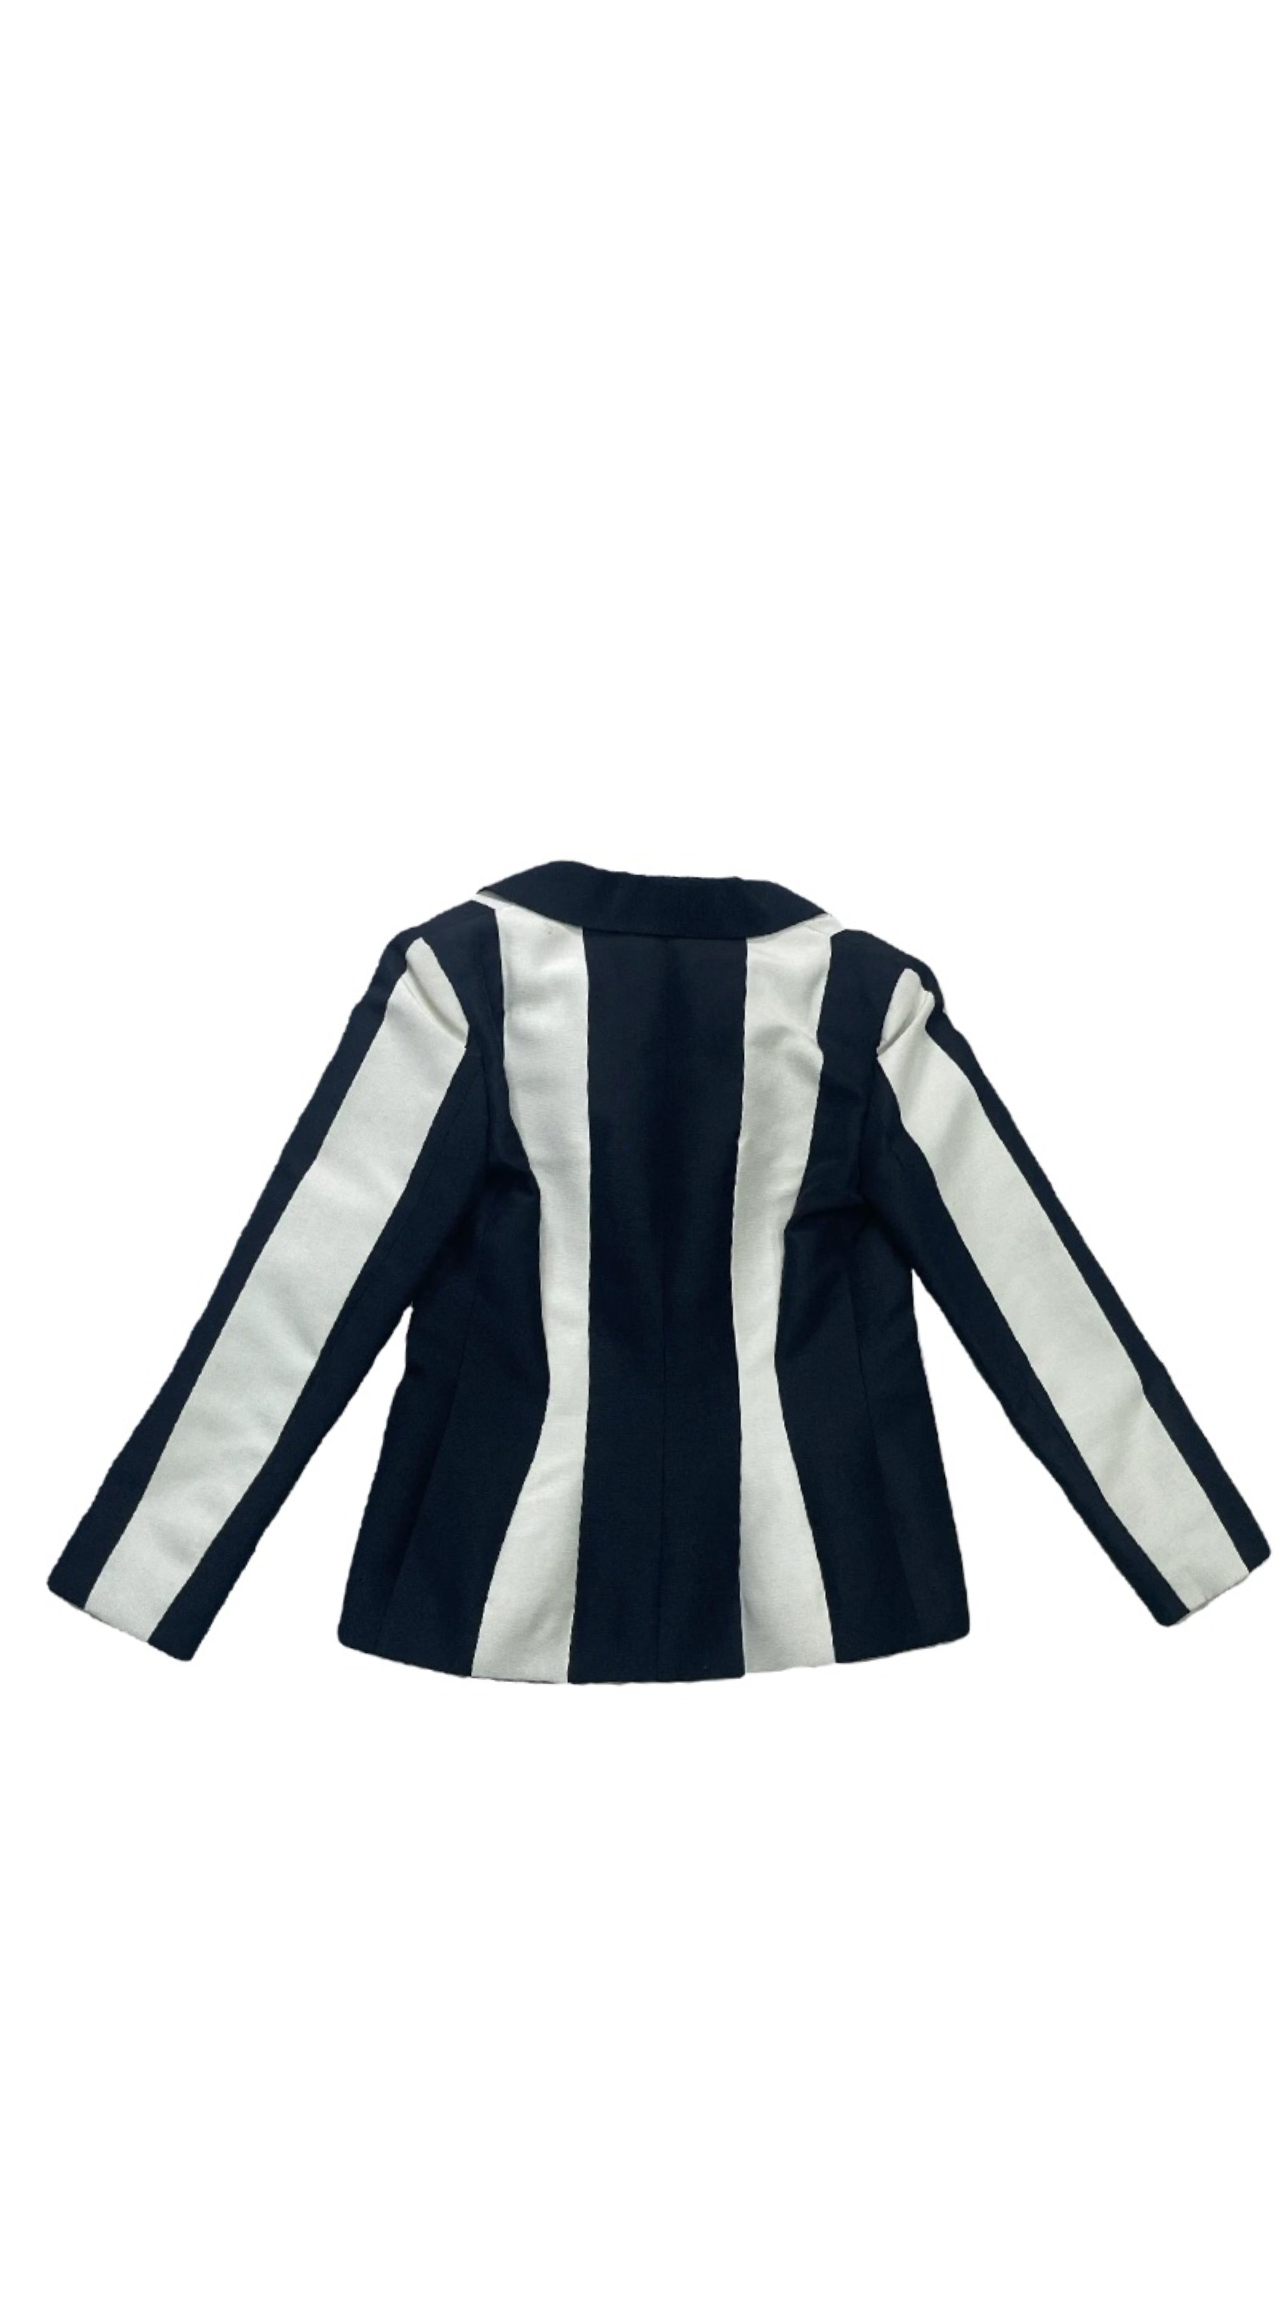 LANVIN Resort Collection Striped Blazer